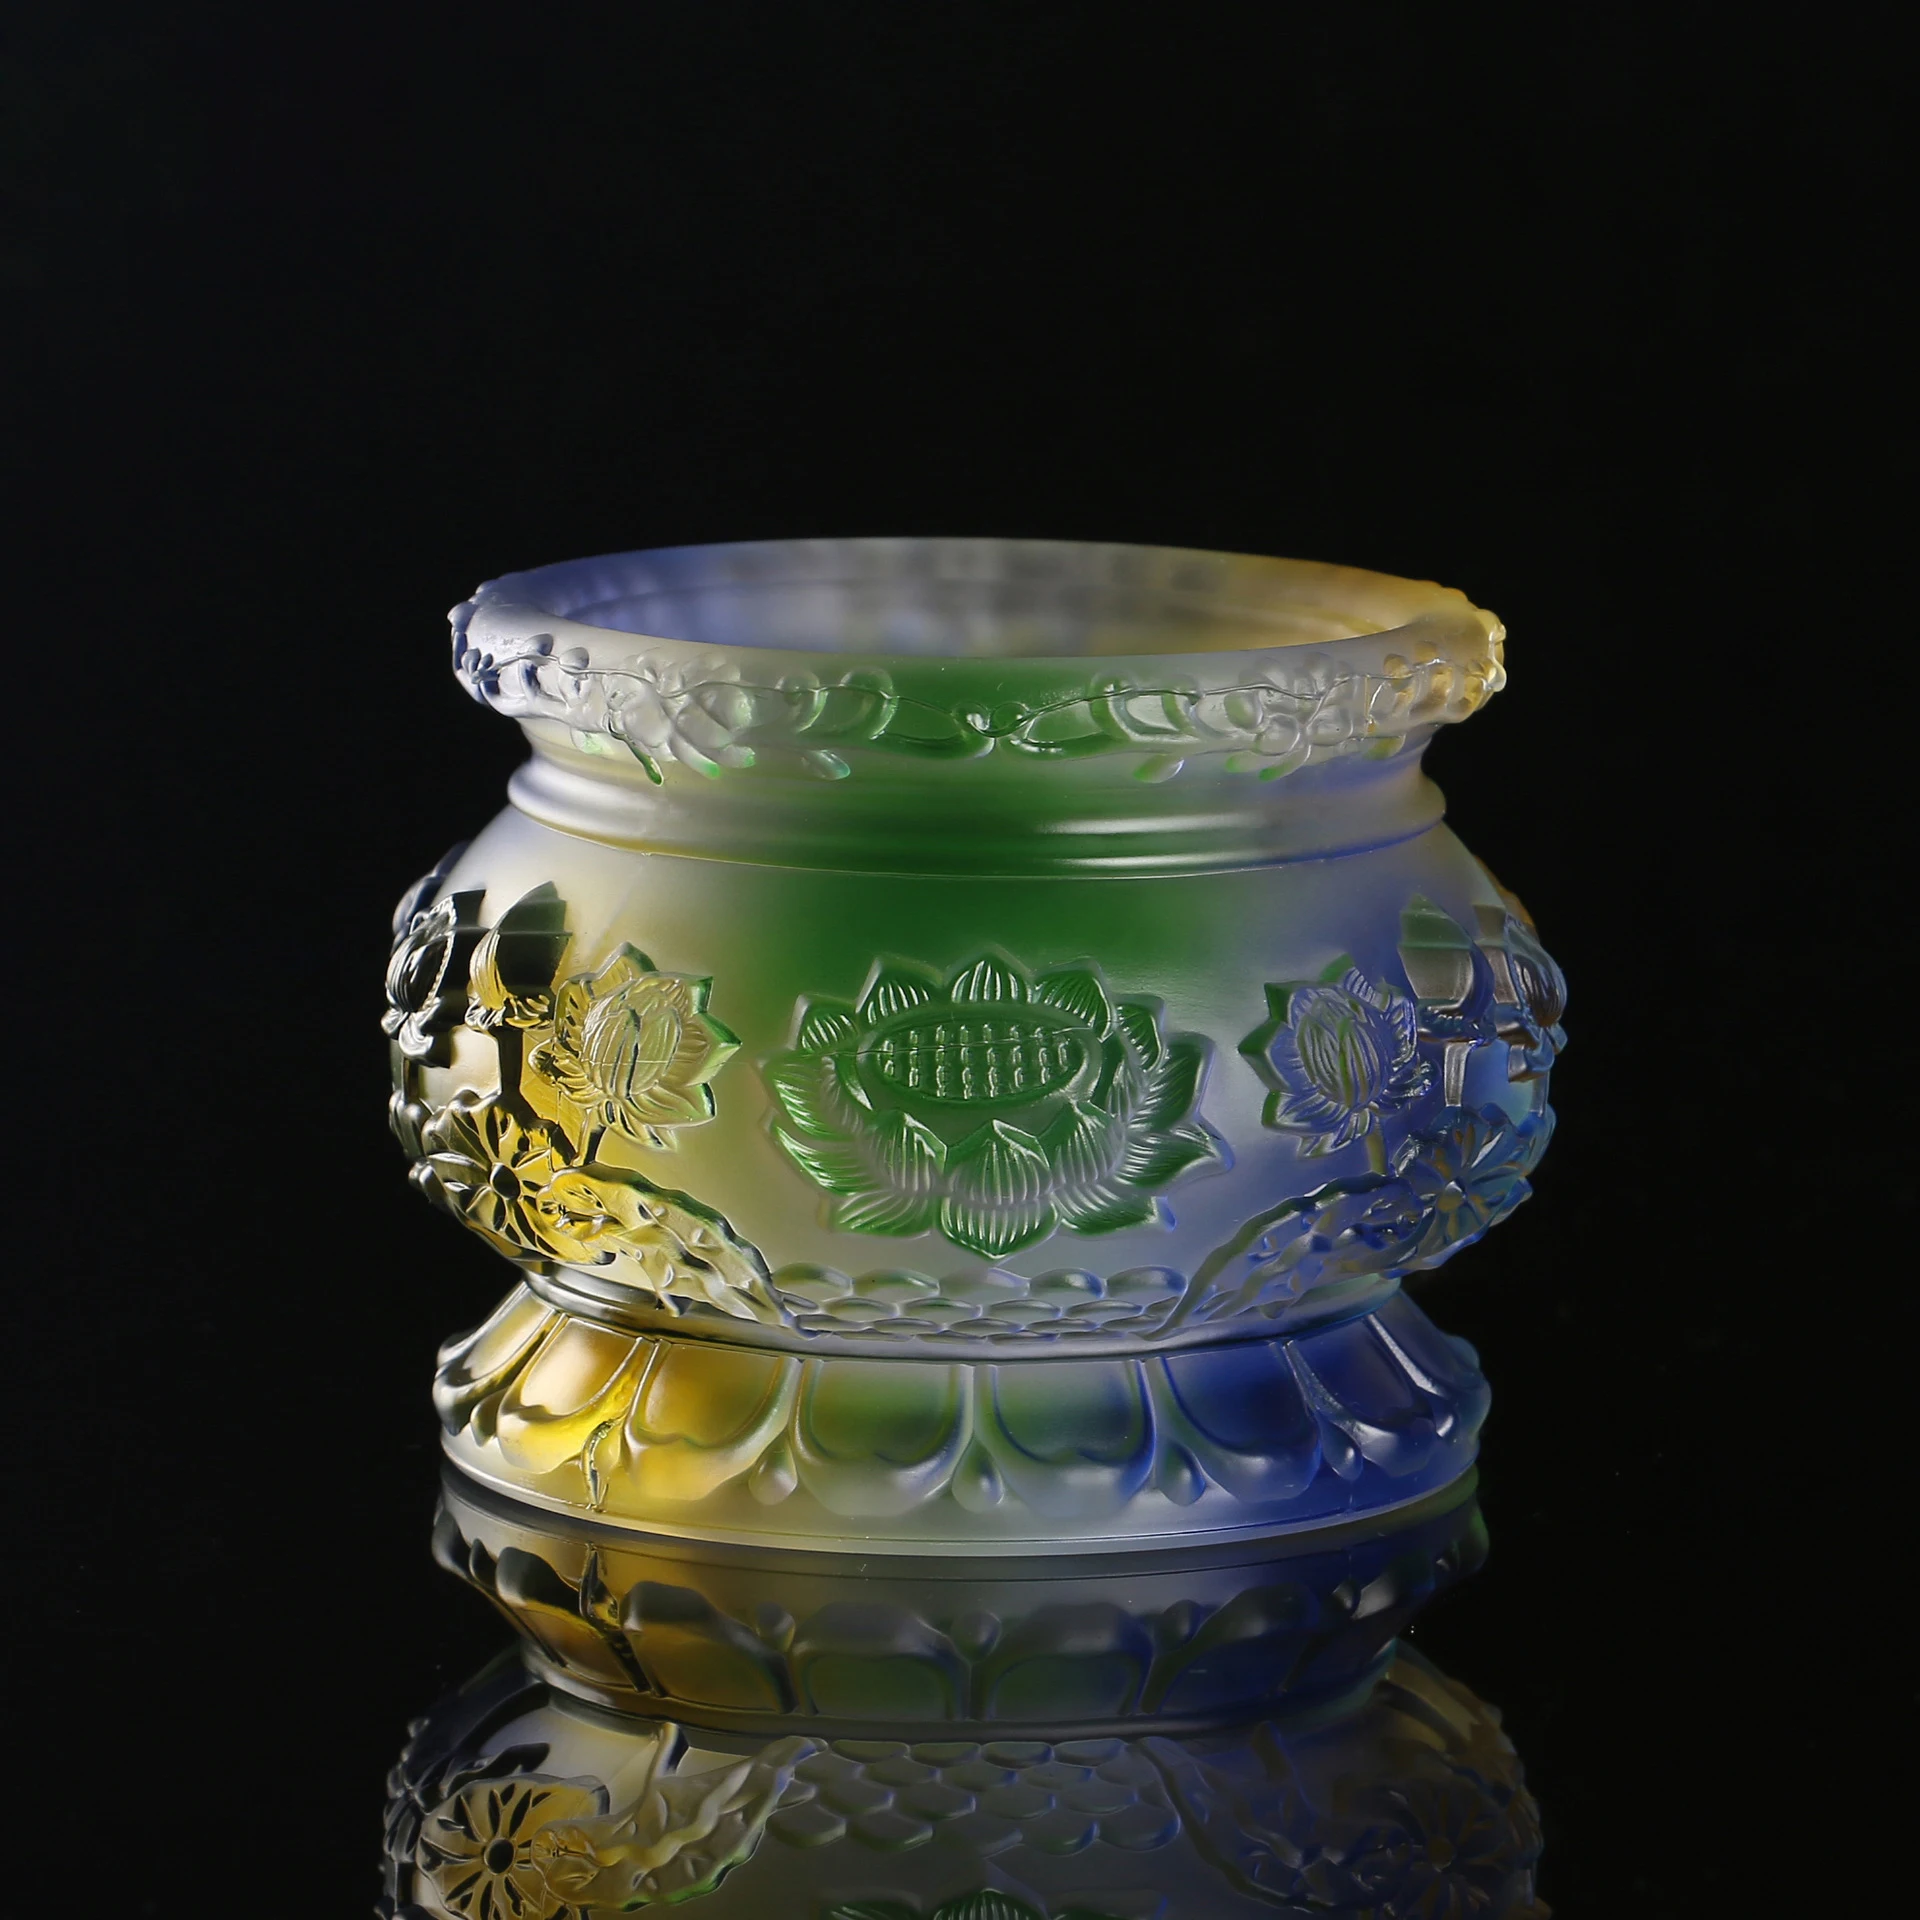 

Lotus Carving Incense Burner LiuLi Coloured Glaze Color Glass Table Home Decor Buddhist Supplies Sandalwood Holder Glazed Censer